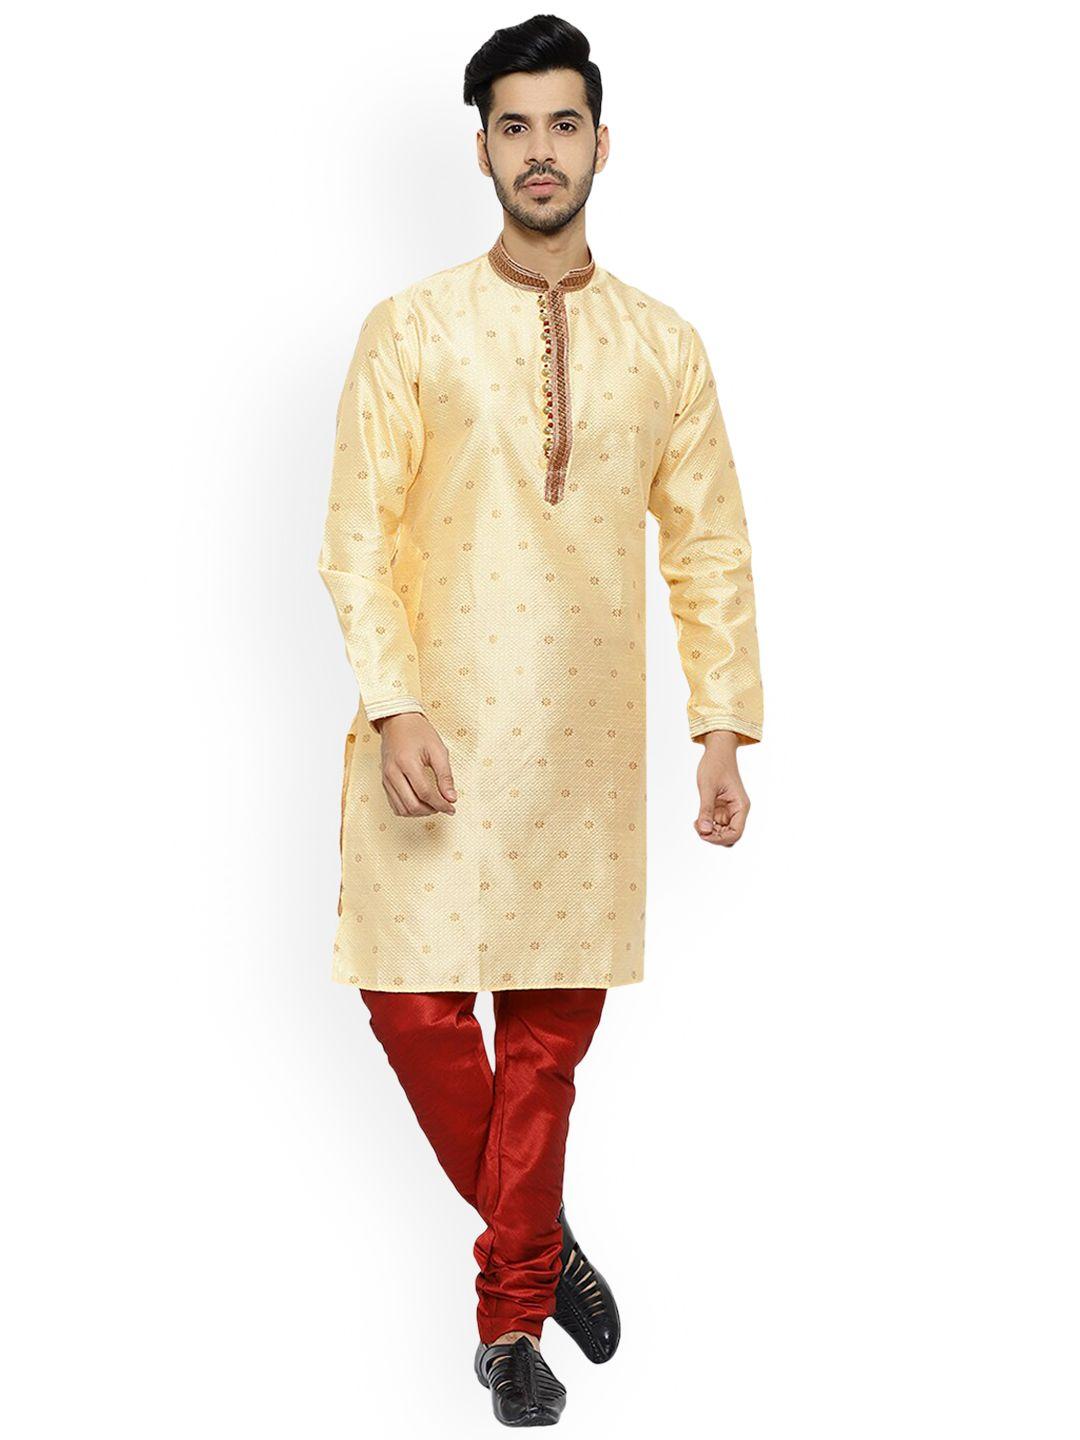 pro-ethic style developer men gold-toned ethnic motifs embroidered kurta with pyjamas